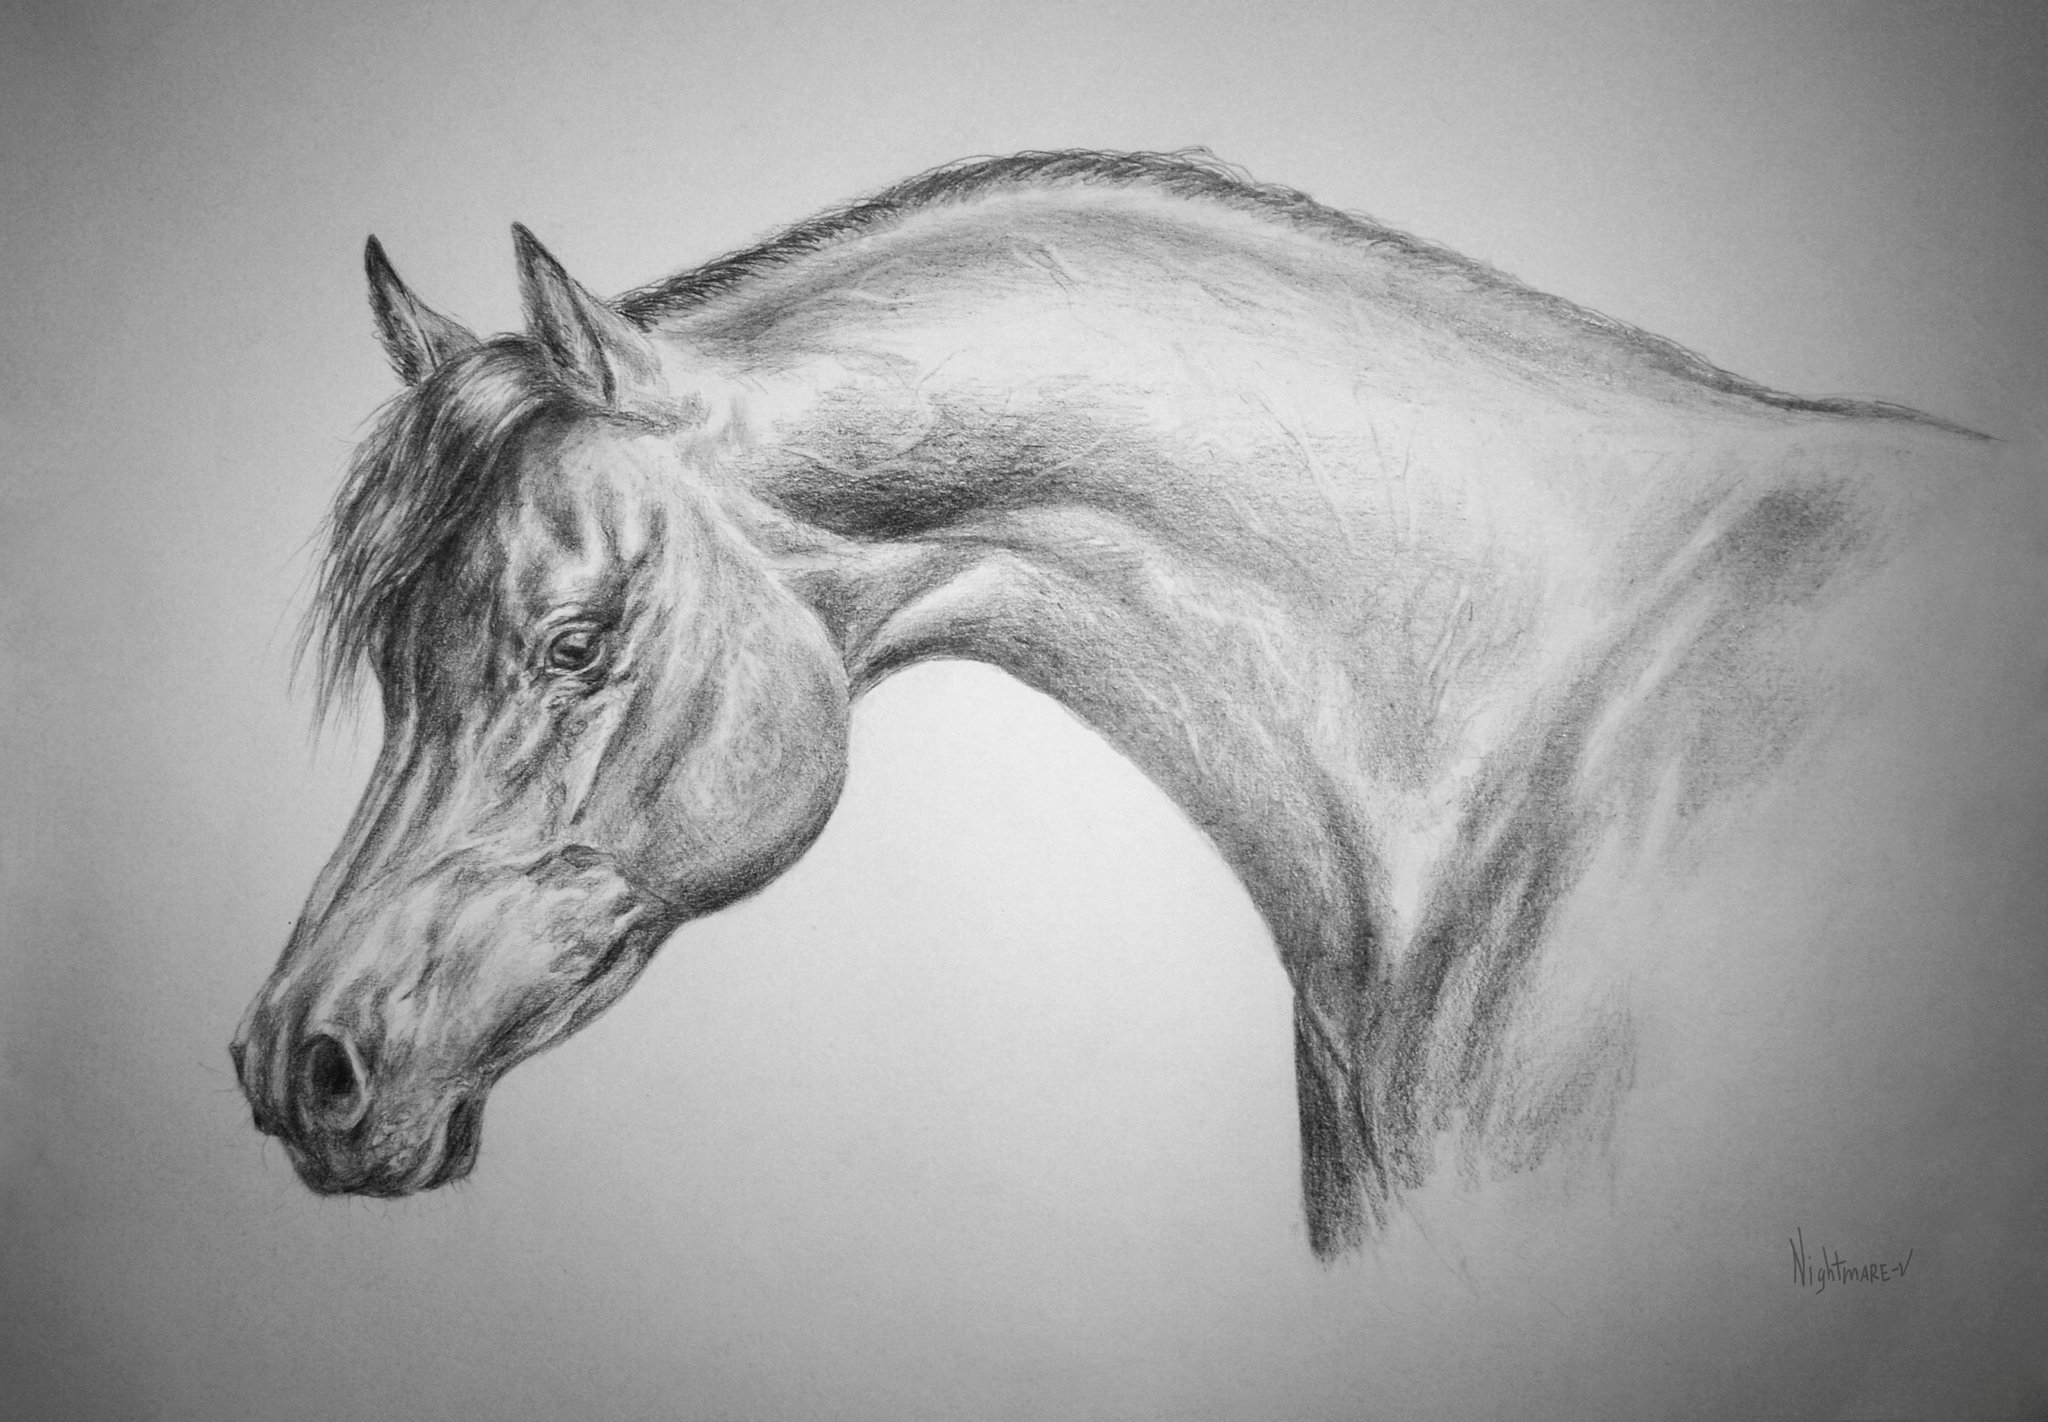 Срисовать рисунки. Красивые рисунки карандашом. Животные карандашом. Красивые рисунки лошадей карандашом. Красивые картинки для срисовки.